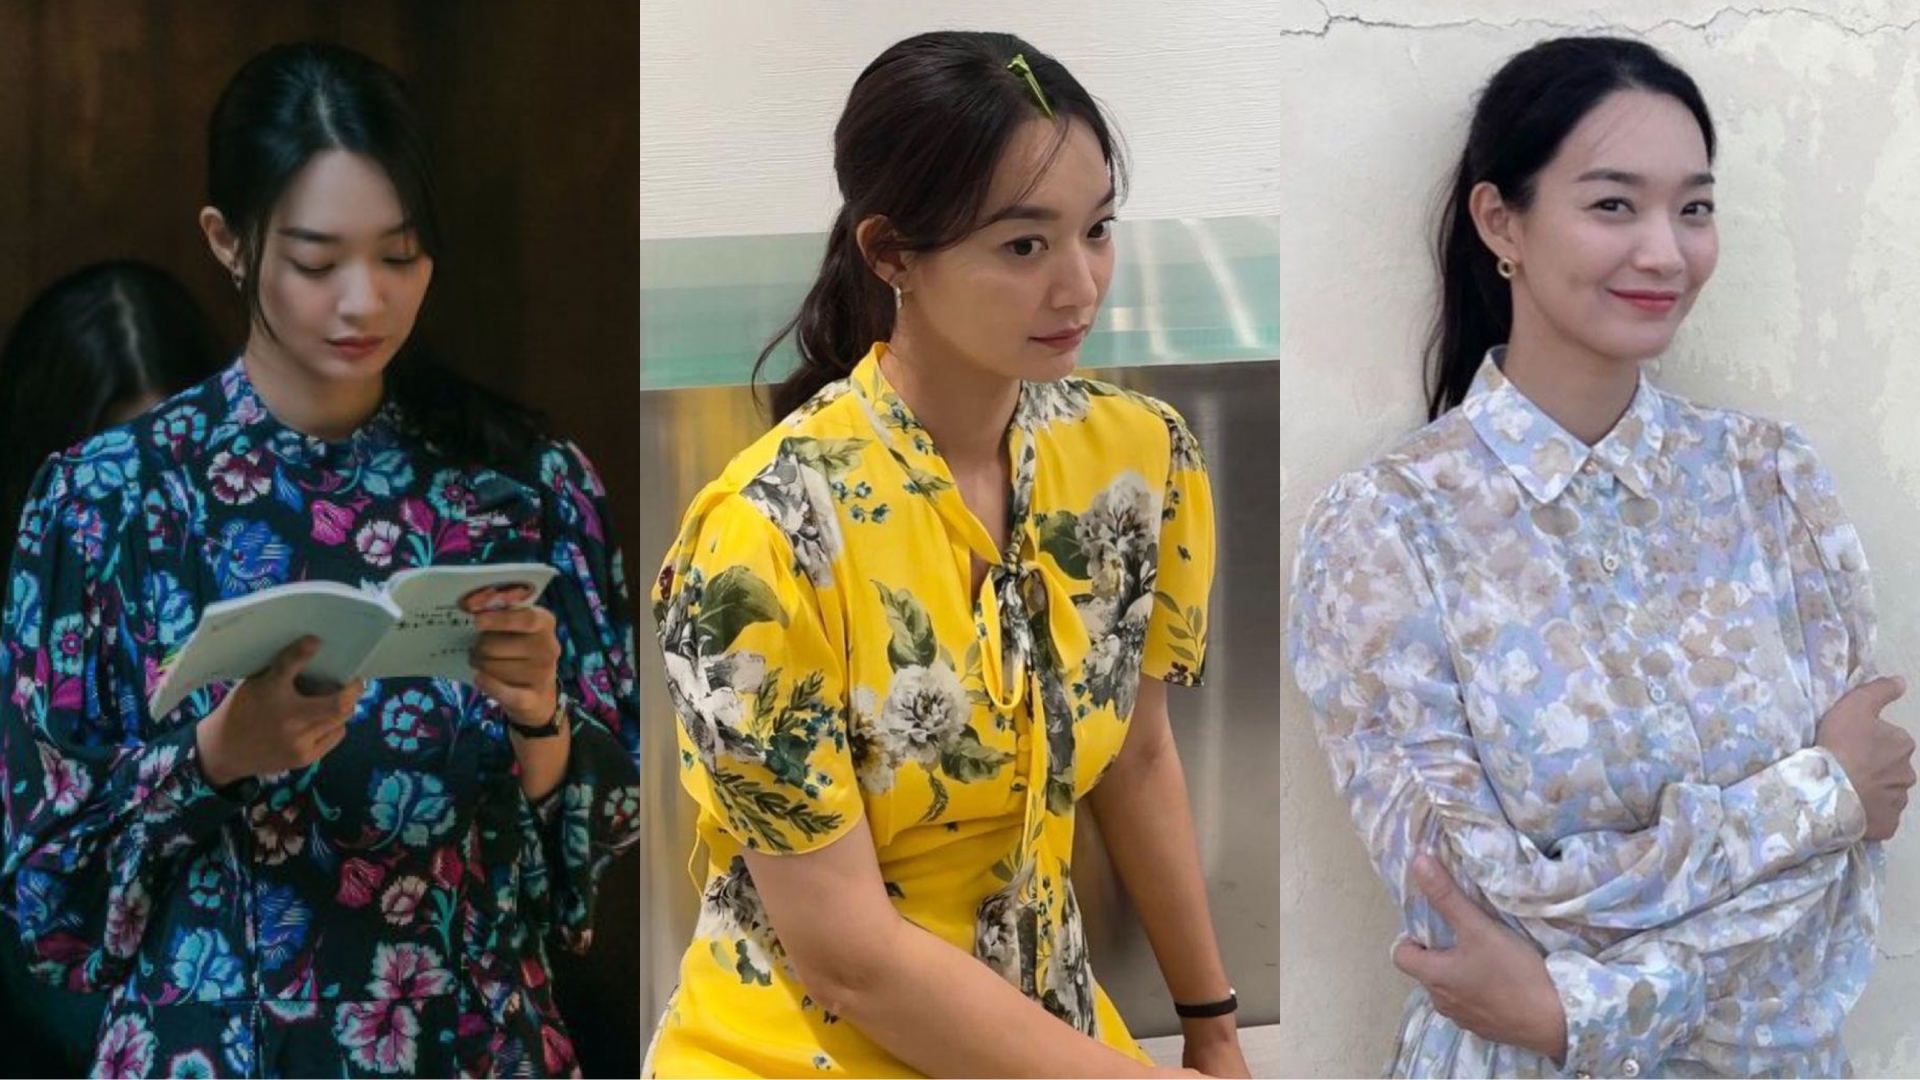 Mặc dù đôi lúc bị chê vì mặc những trang phục sến súa và 'dìm' dáng nhưng nhìn chung style của Shin Min Ah vẫn rất ấn tượng.